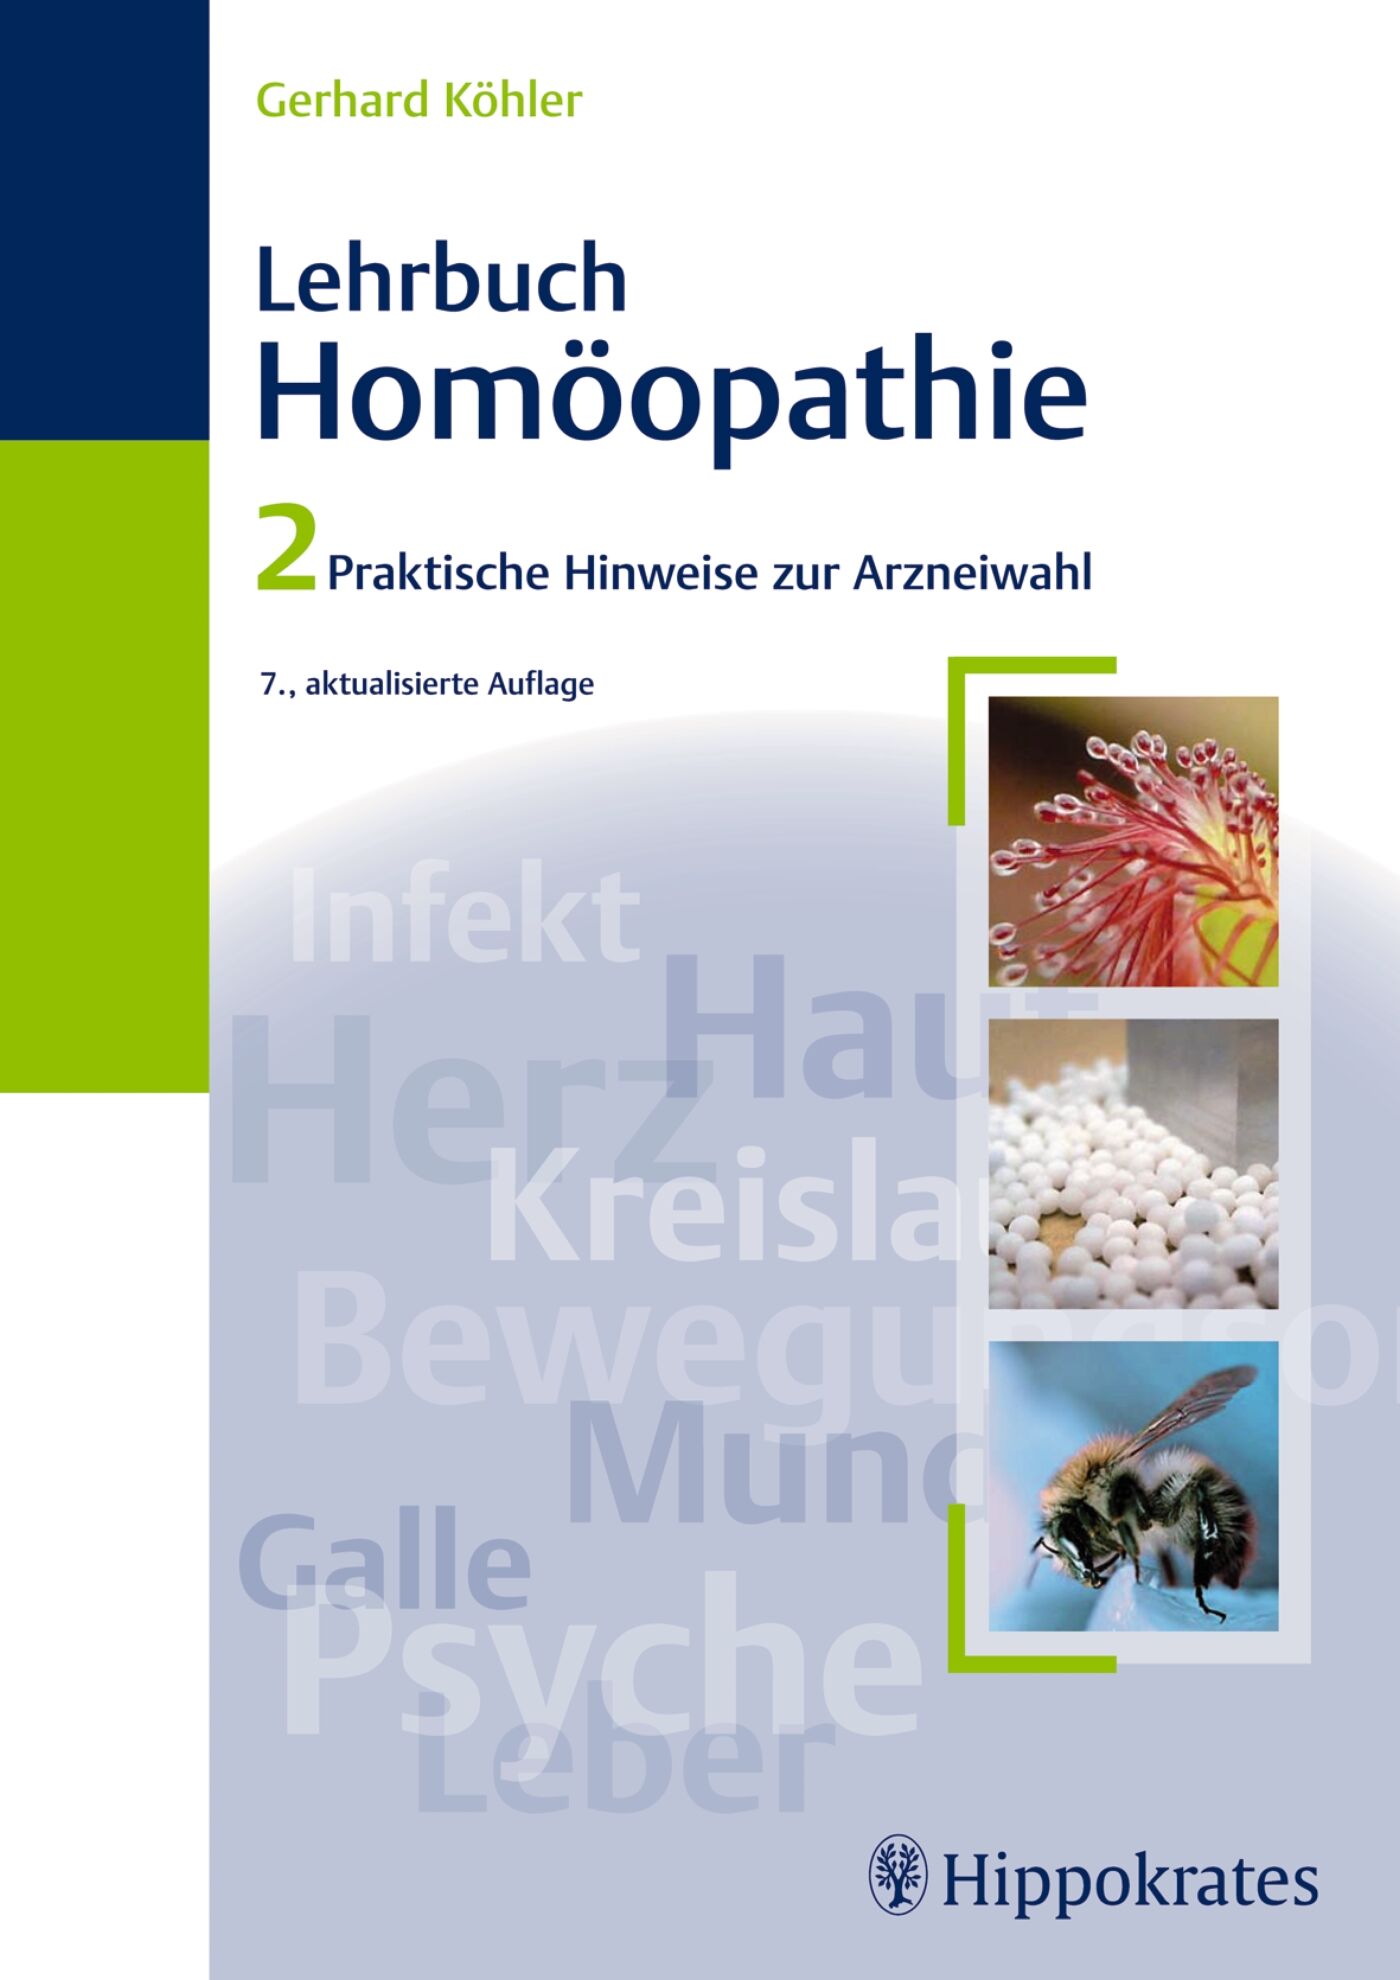 Lehrbuch der Homöopathie, 9783830455622